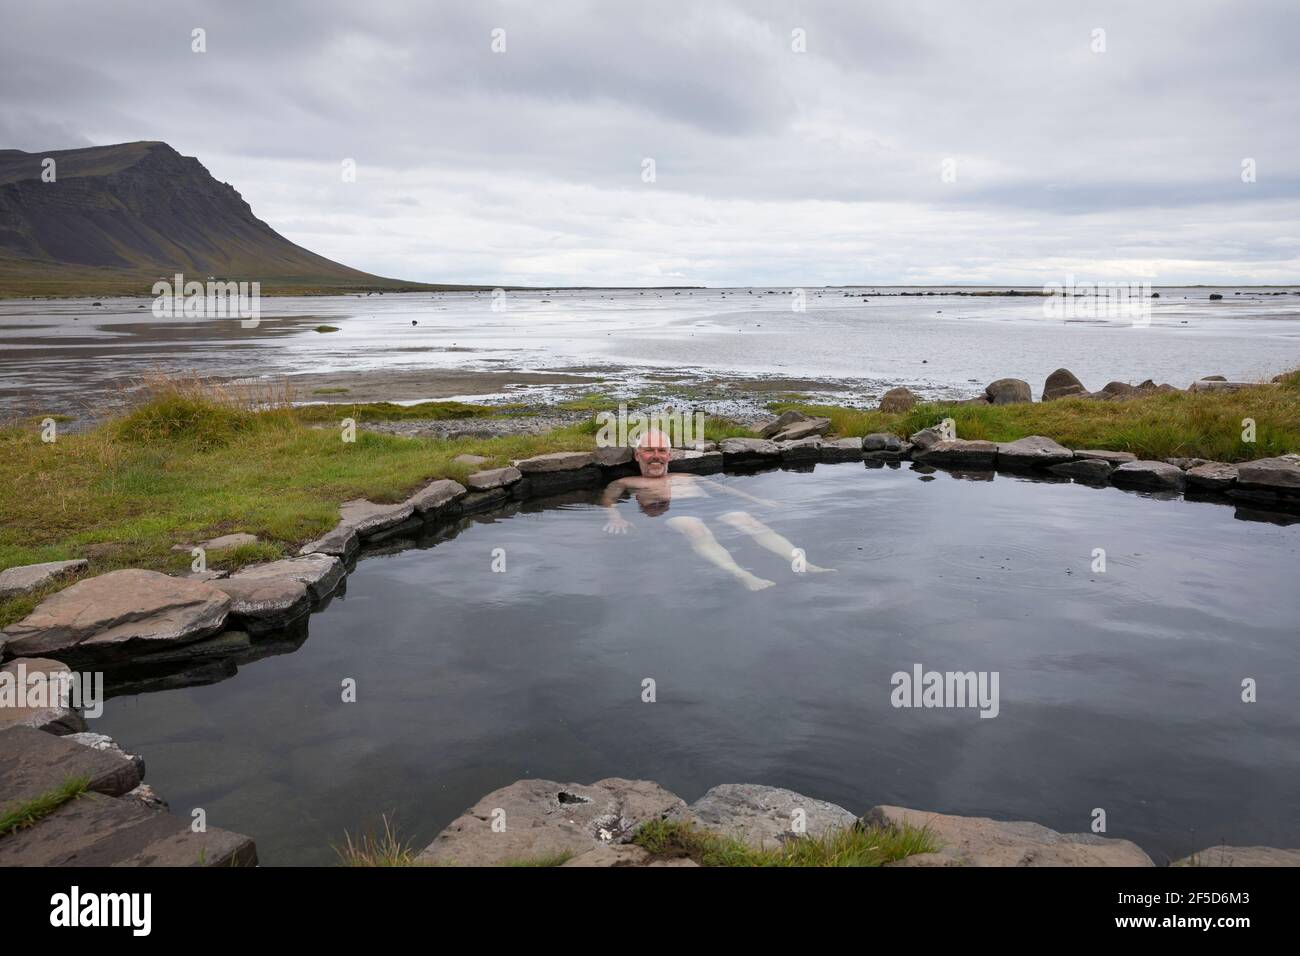 Hombre bañándose en la piscina geotérmica natural de Krosslaug directamente en la costa, Islandia, Birkimelur Foto de stock